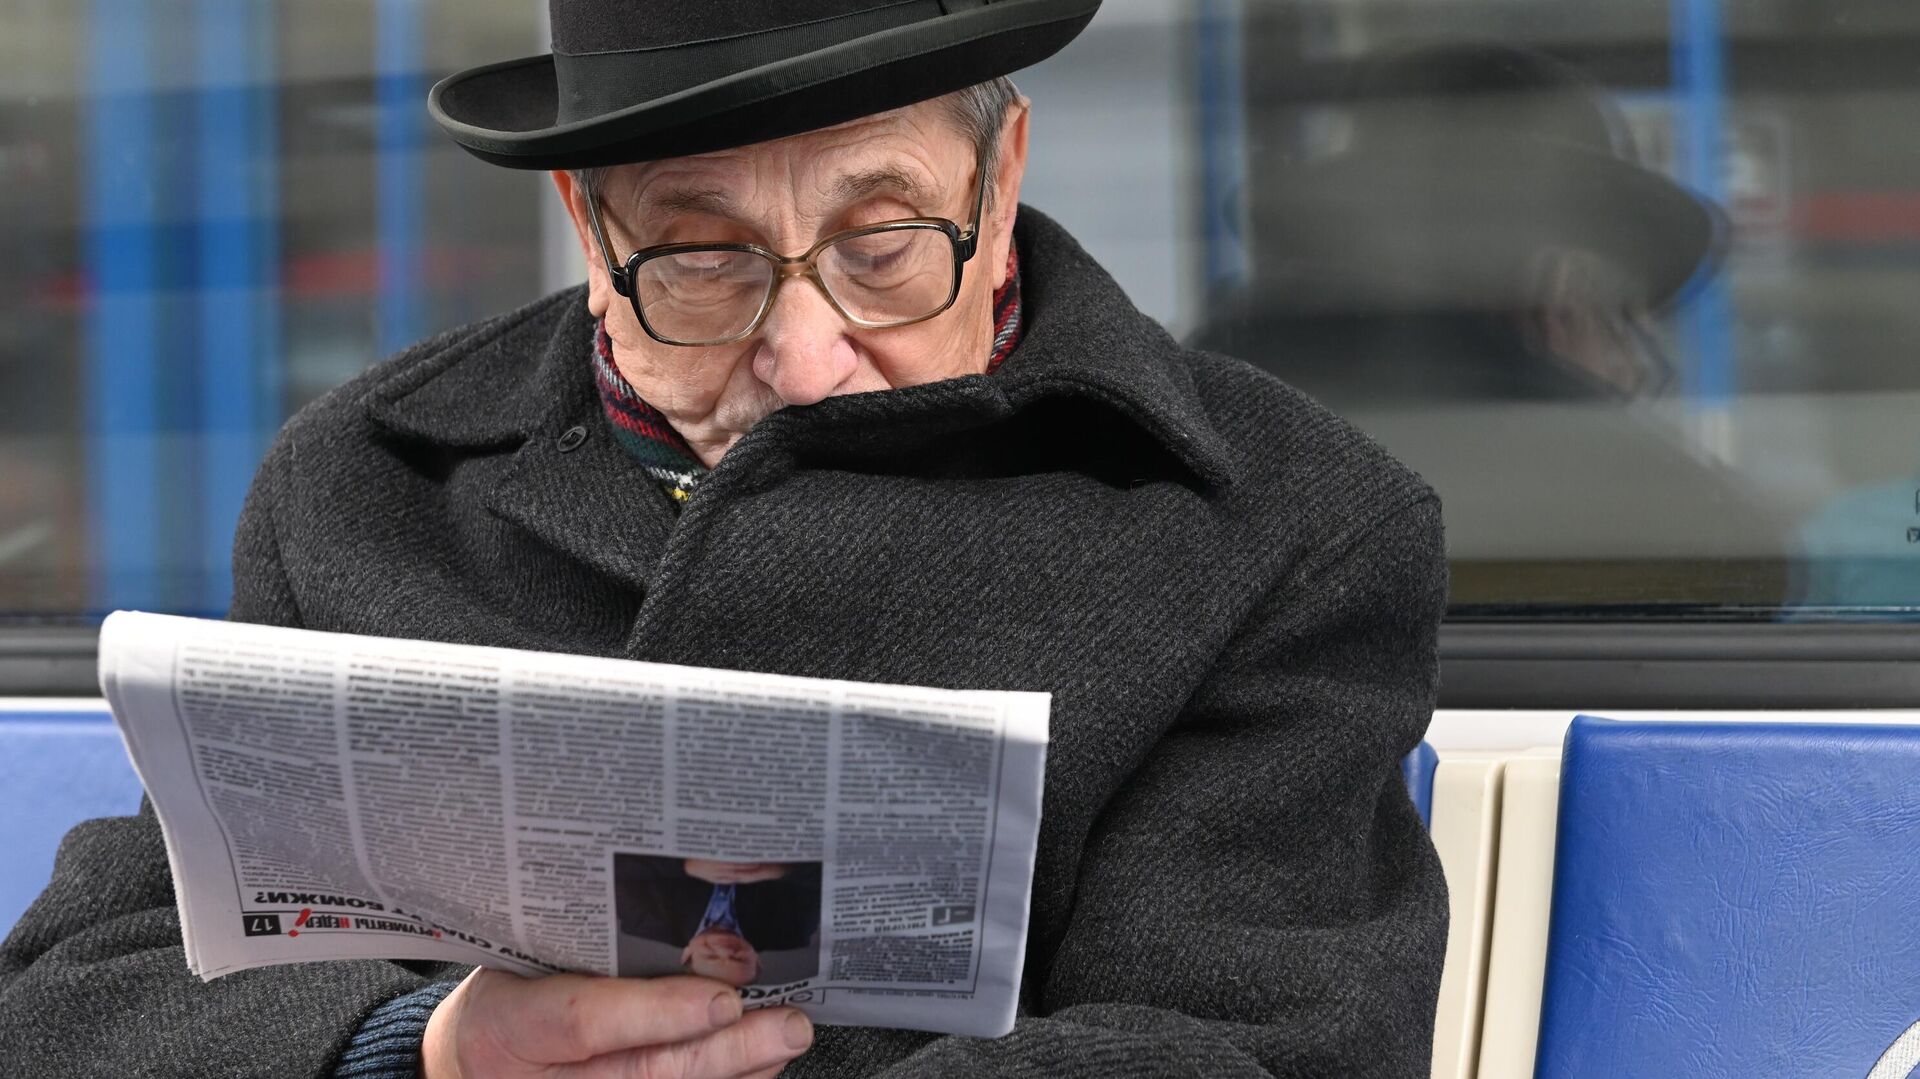 Мужчина читает газету во время поездки в метро - РИА Новости, 1920, 16.12.2020